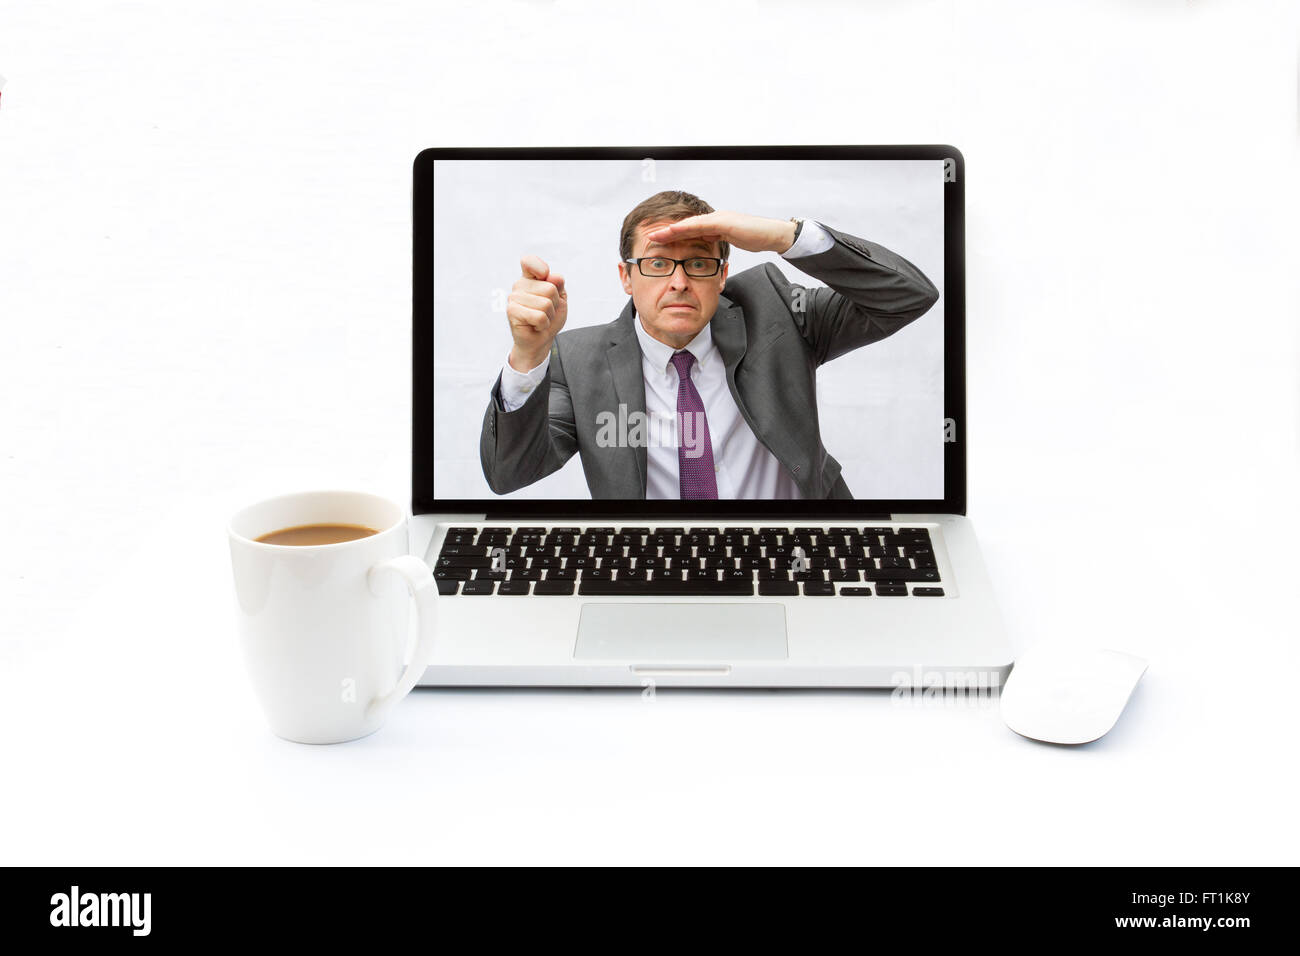 Ein Geschäftsmann in einem Laptop auf einem weißen Schreibtisch und Hintergrund gefangen und auf der Suche nach technische Hilfe. Stockfoto